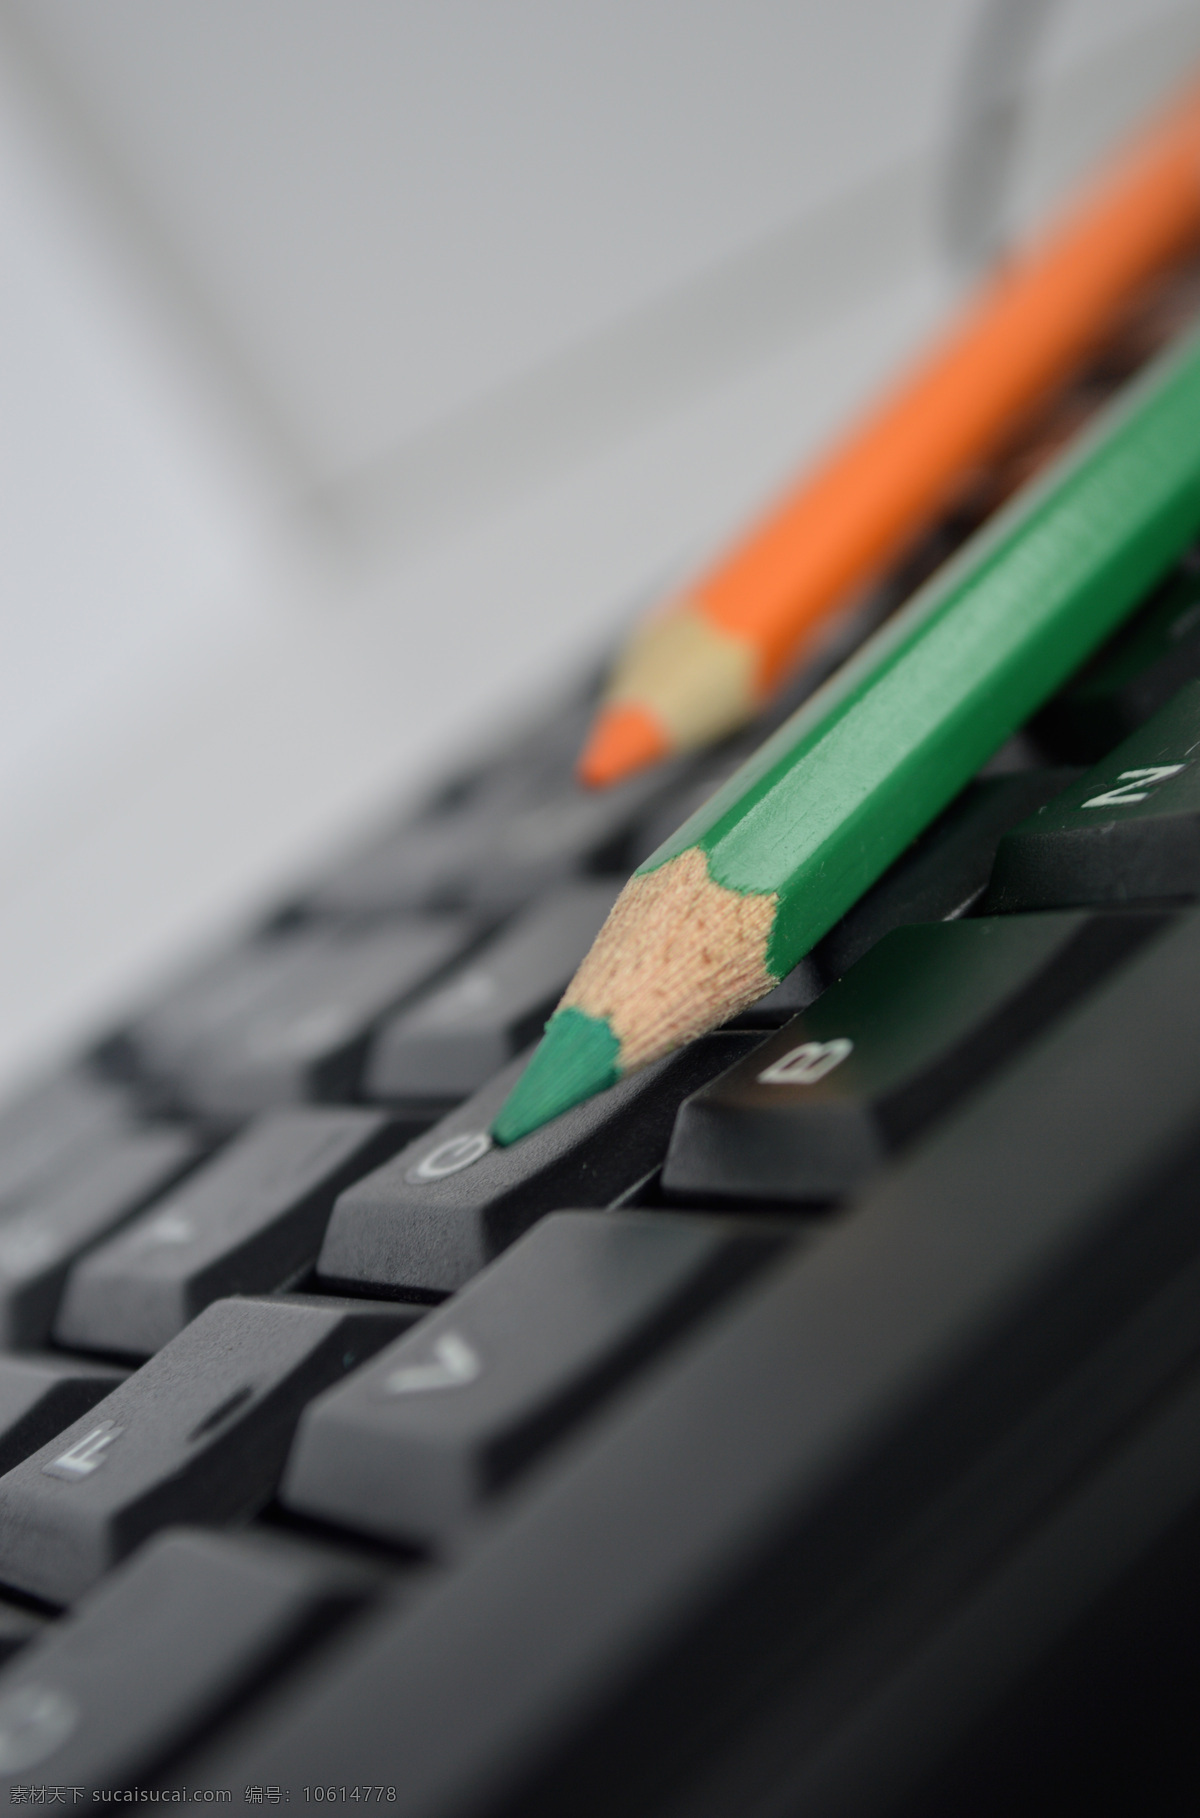 彩铅 彩色铅笔 打字 键盘 摄影图 生活百科 文具 键盘上的画笔 快捷键 笔头 三支笔 学习办公 psd源文件